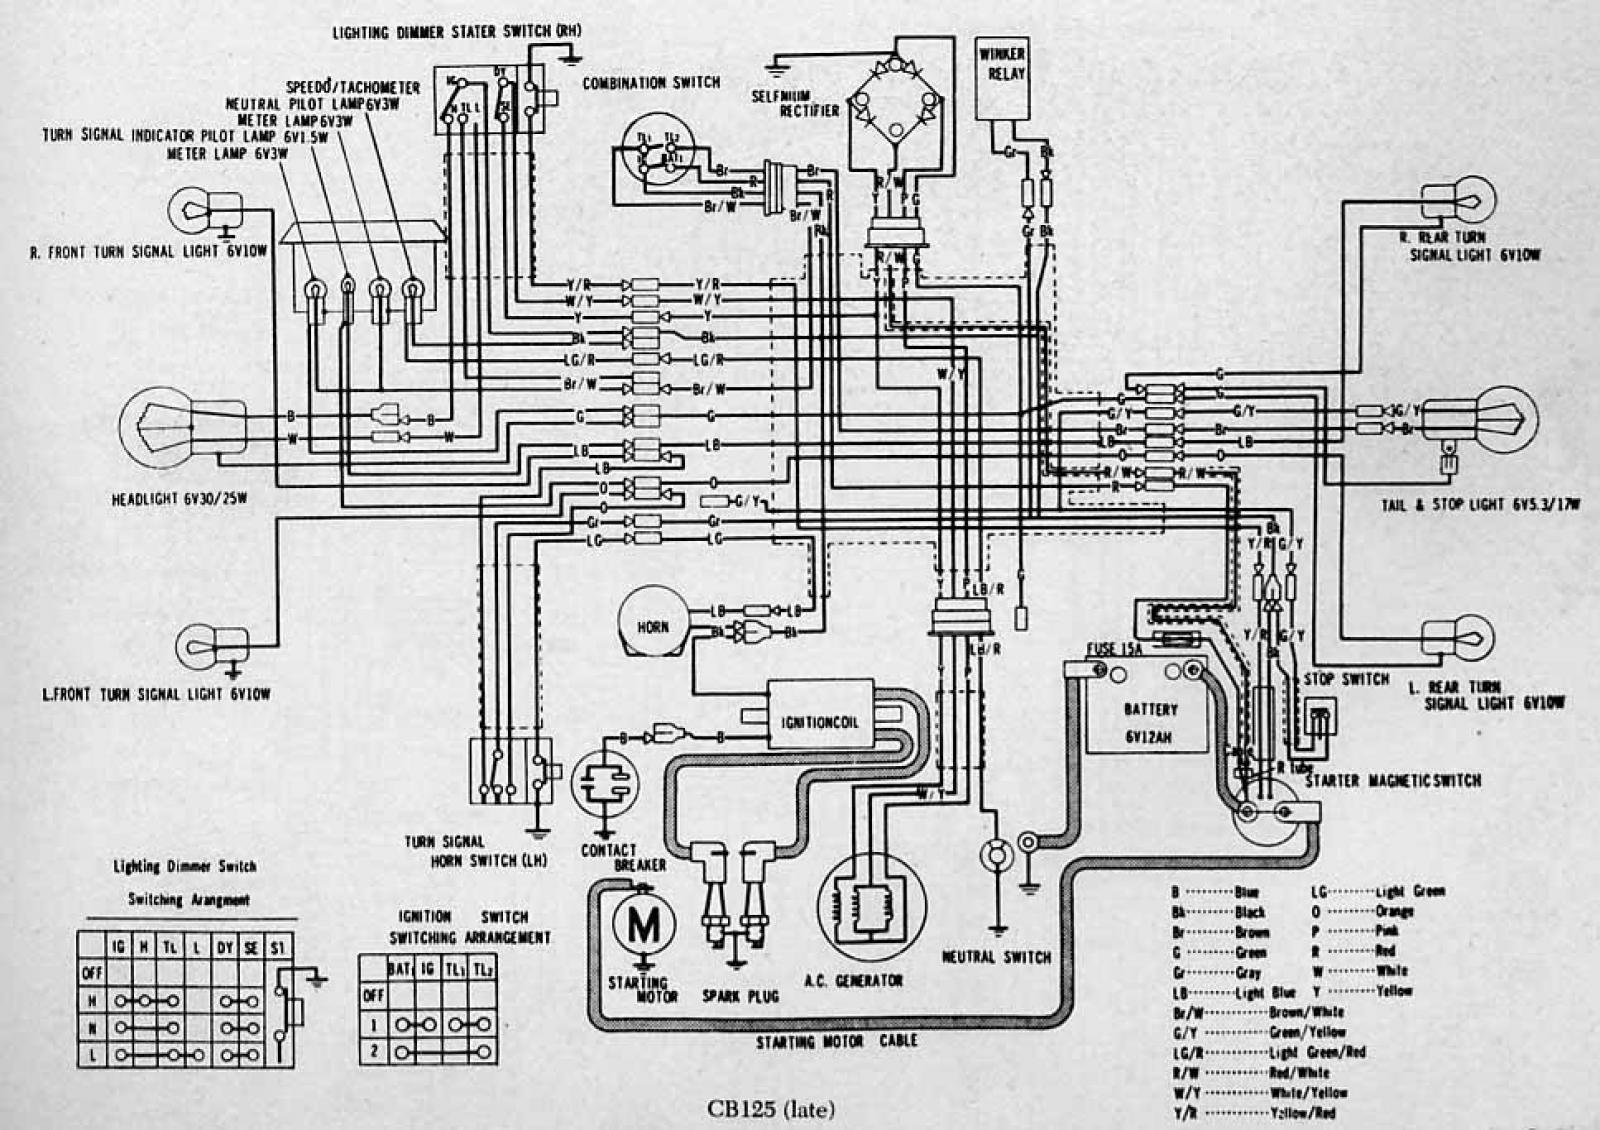 1988 honda 200 wiring diagram